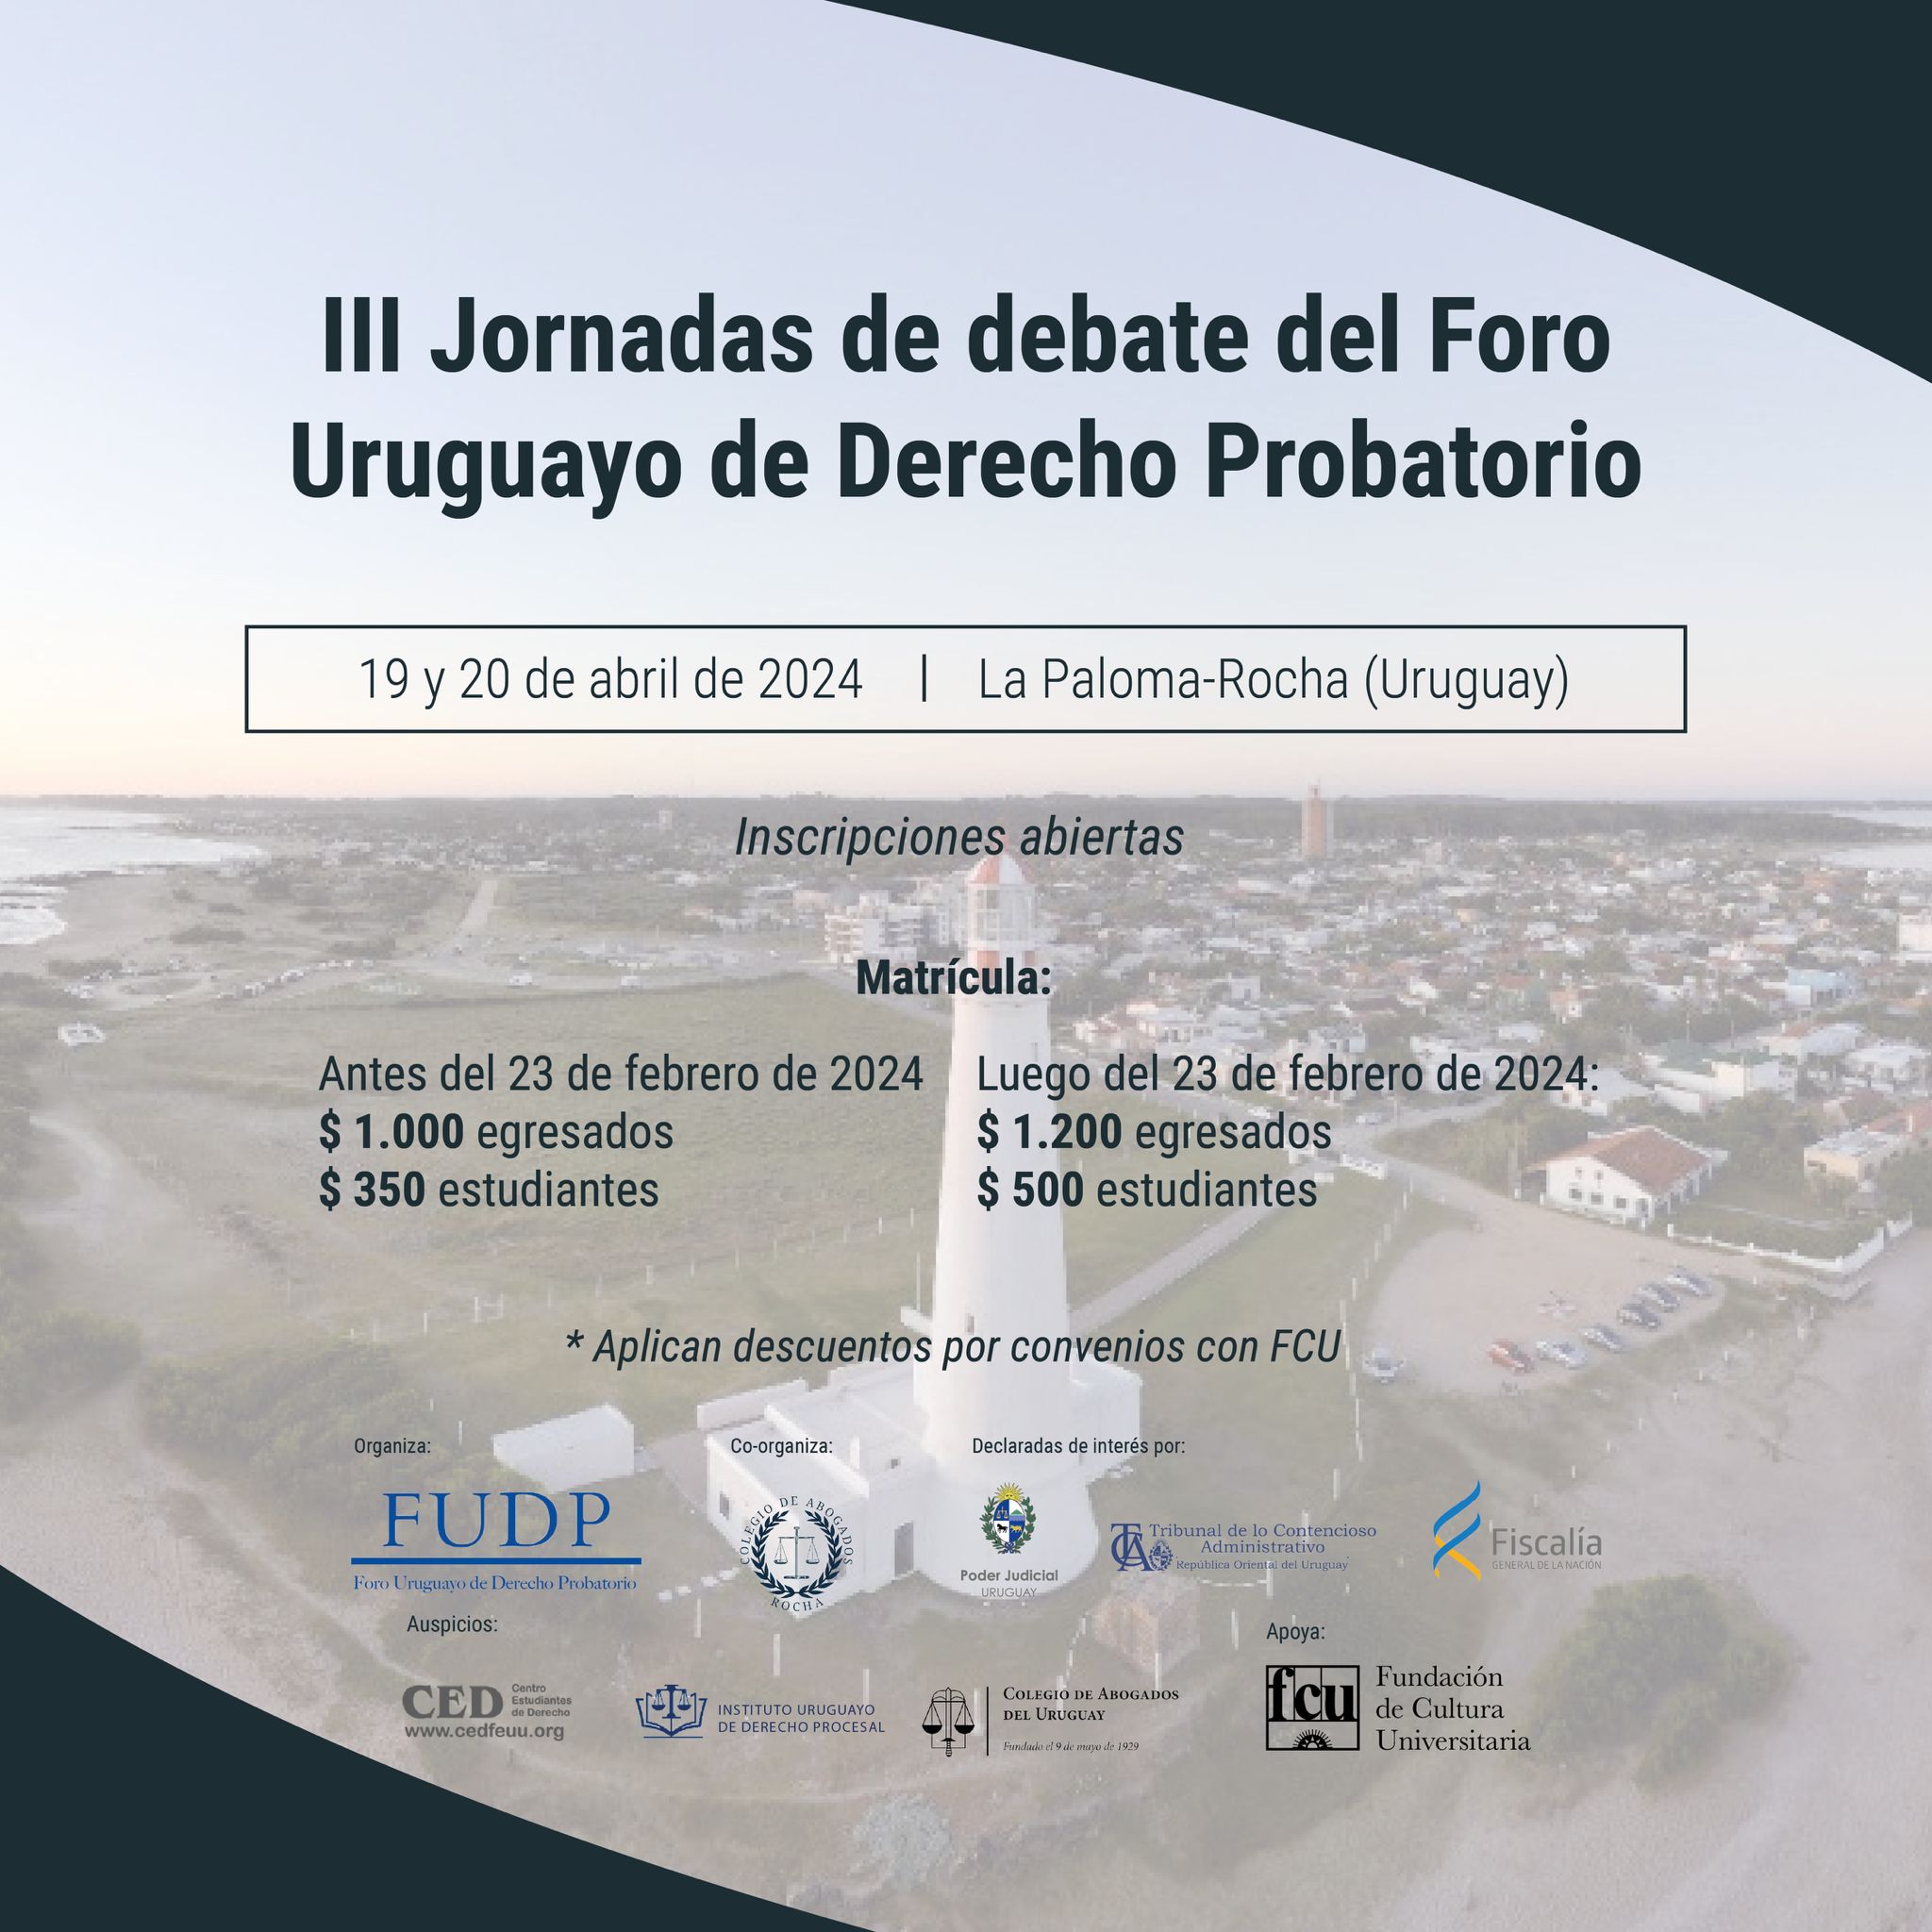 III Jornadas de debate del Foro Uruguayo de Derecho Probatorio.